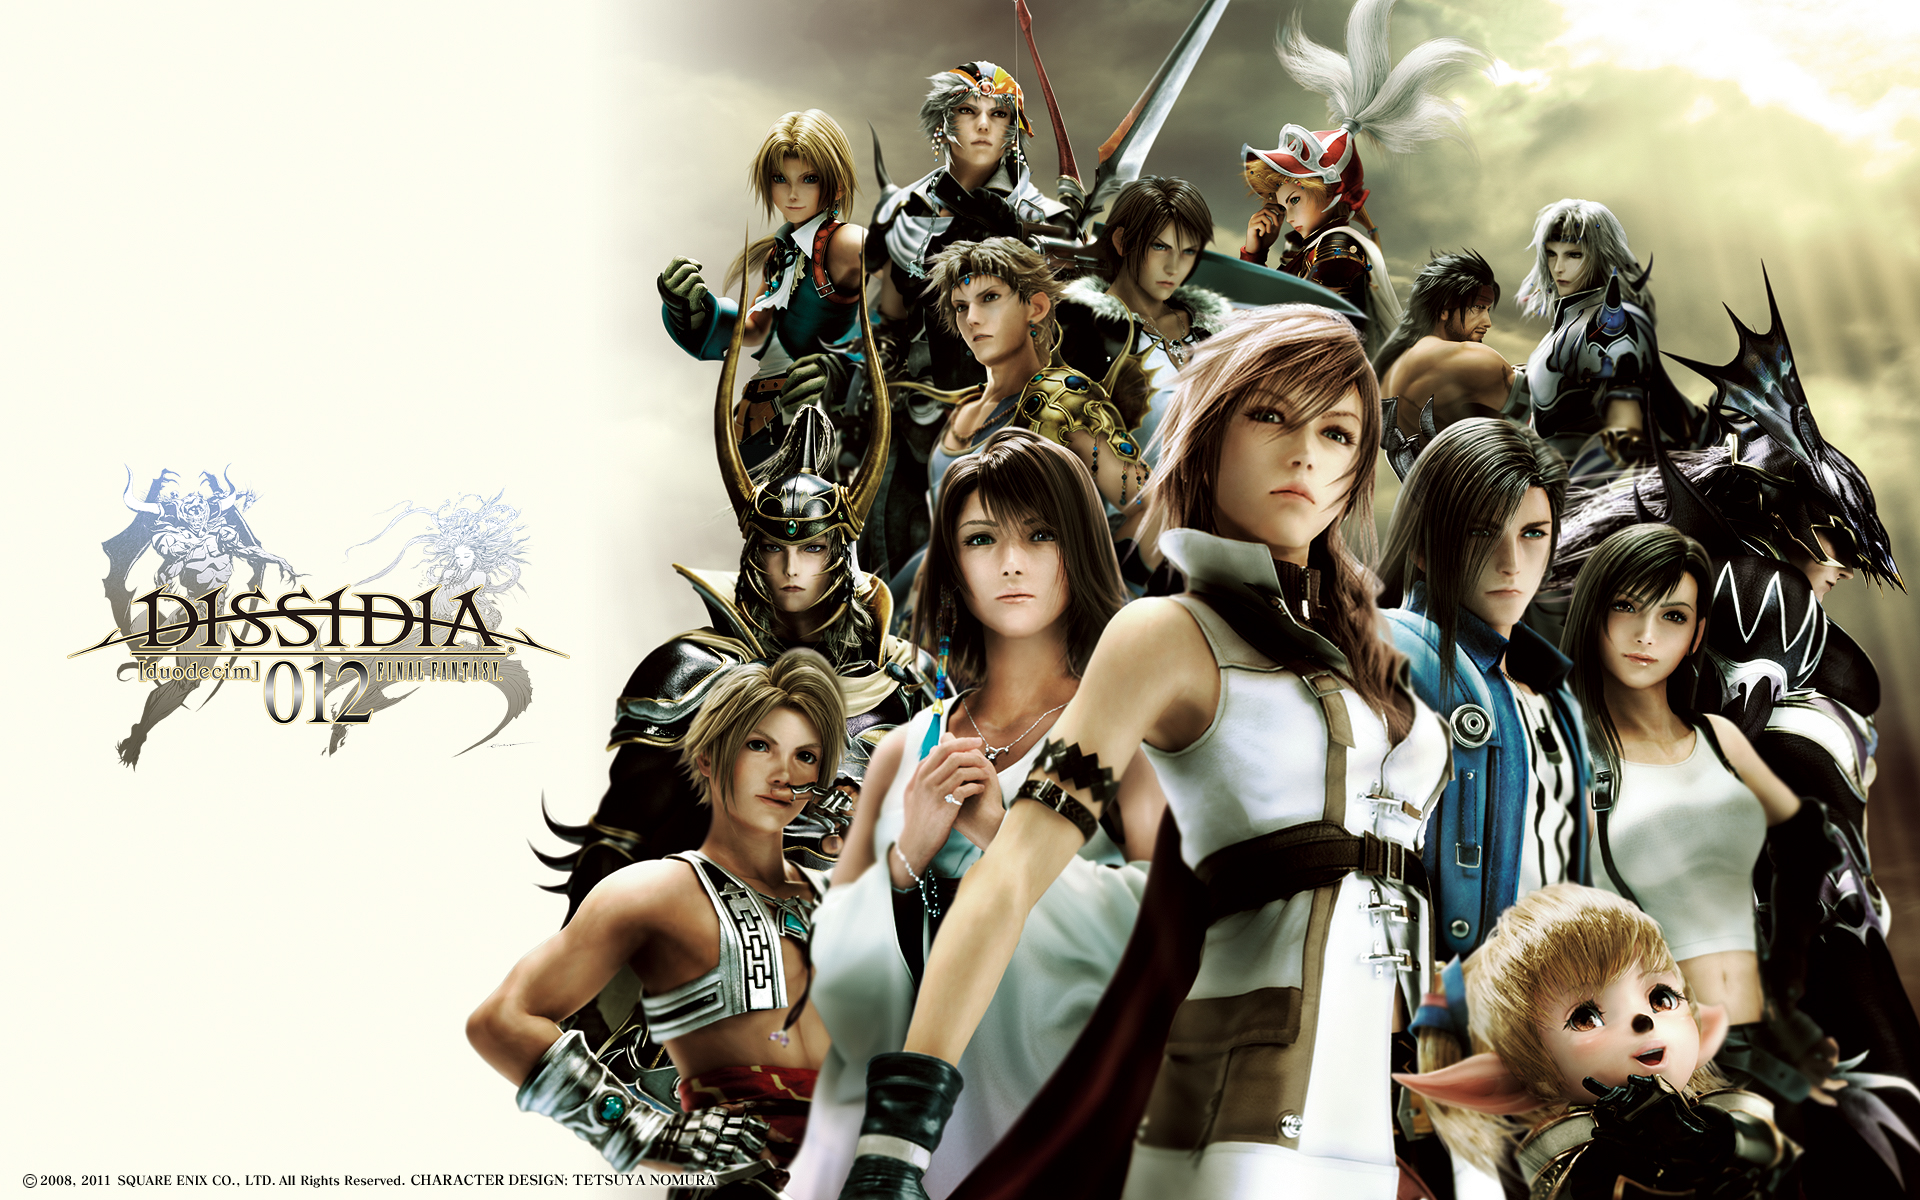 Dissidia 012 Final Fantasy 明日発売 ツインテール最強伝説